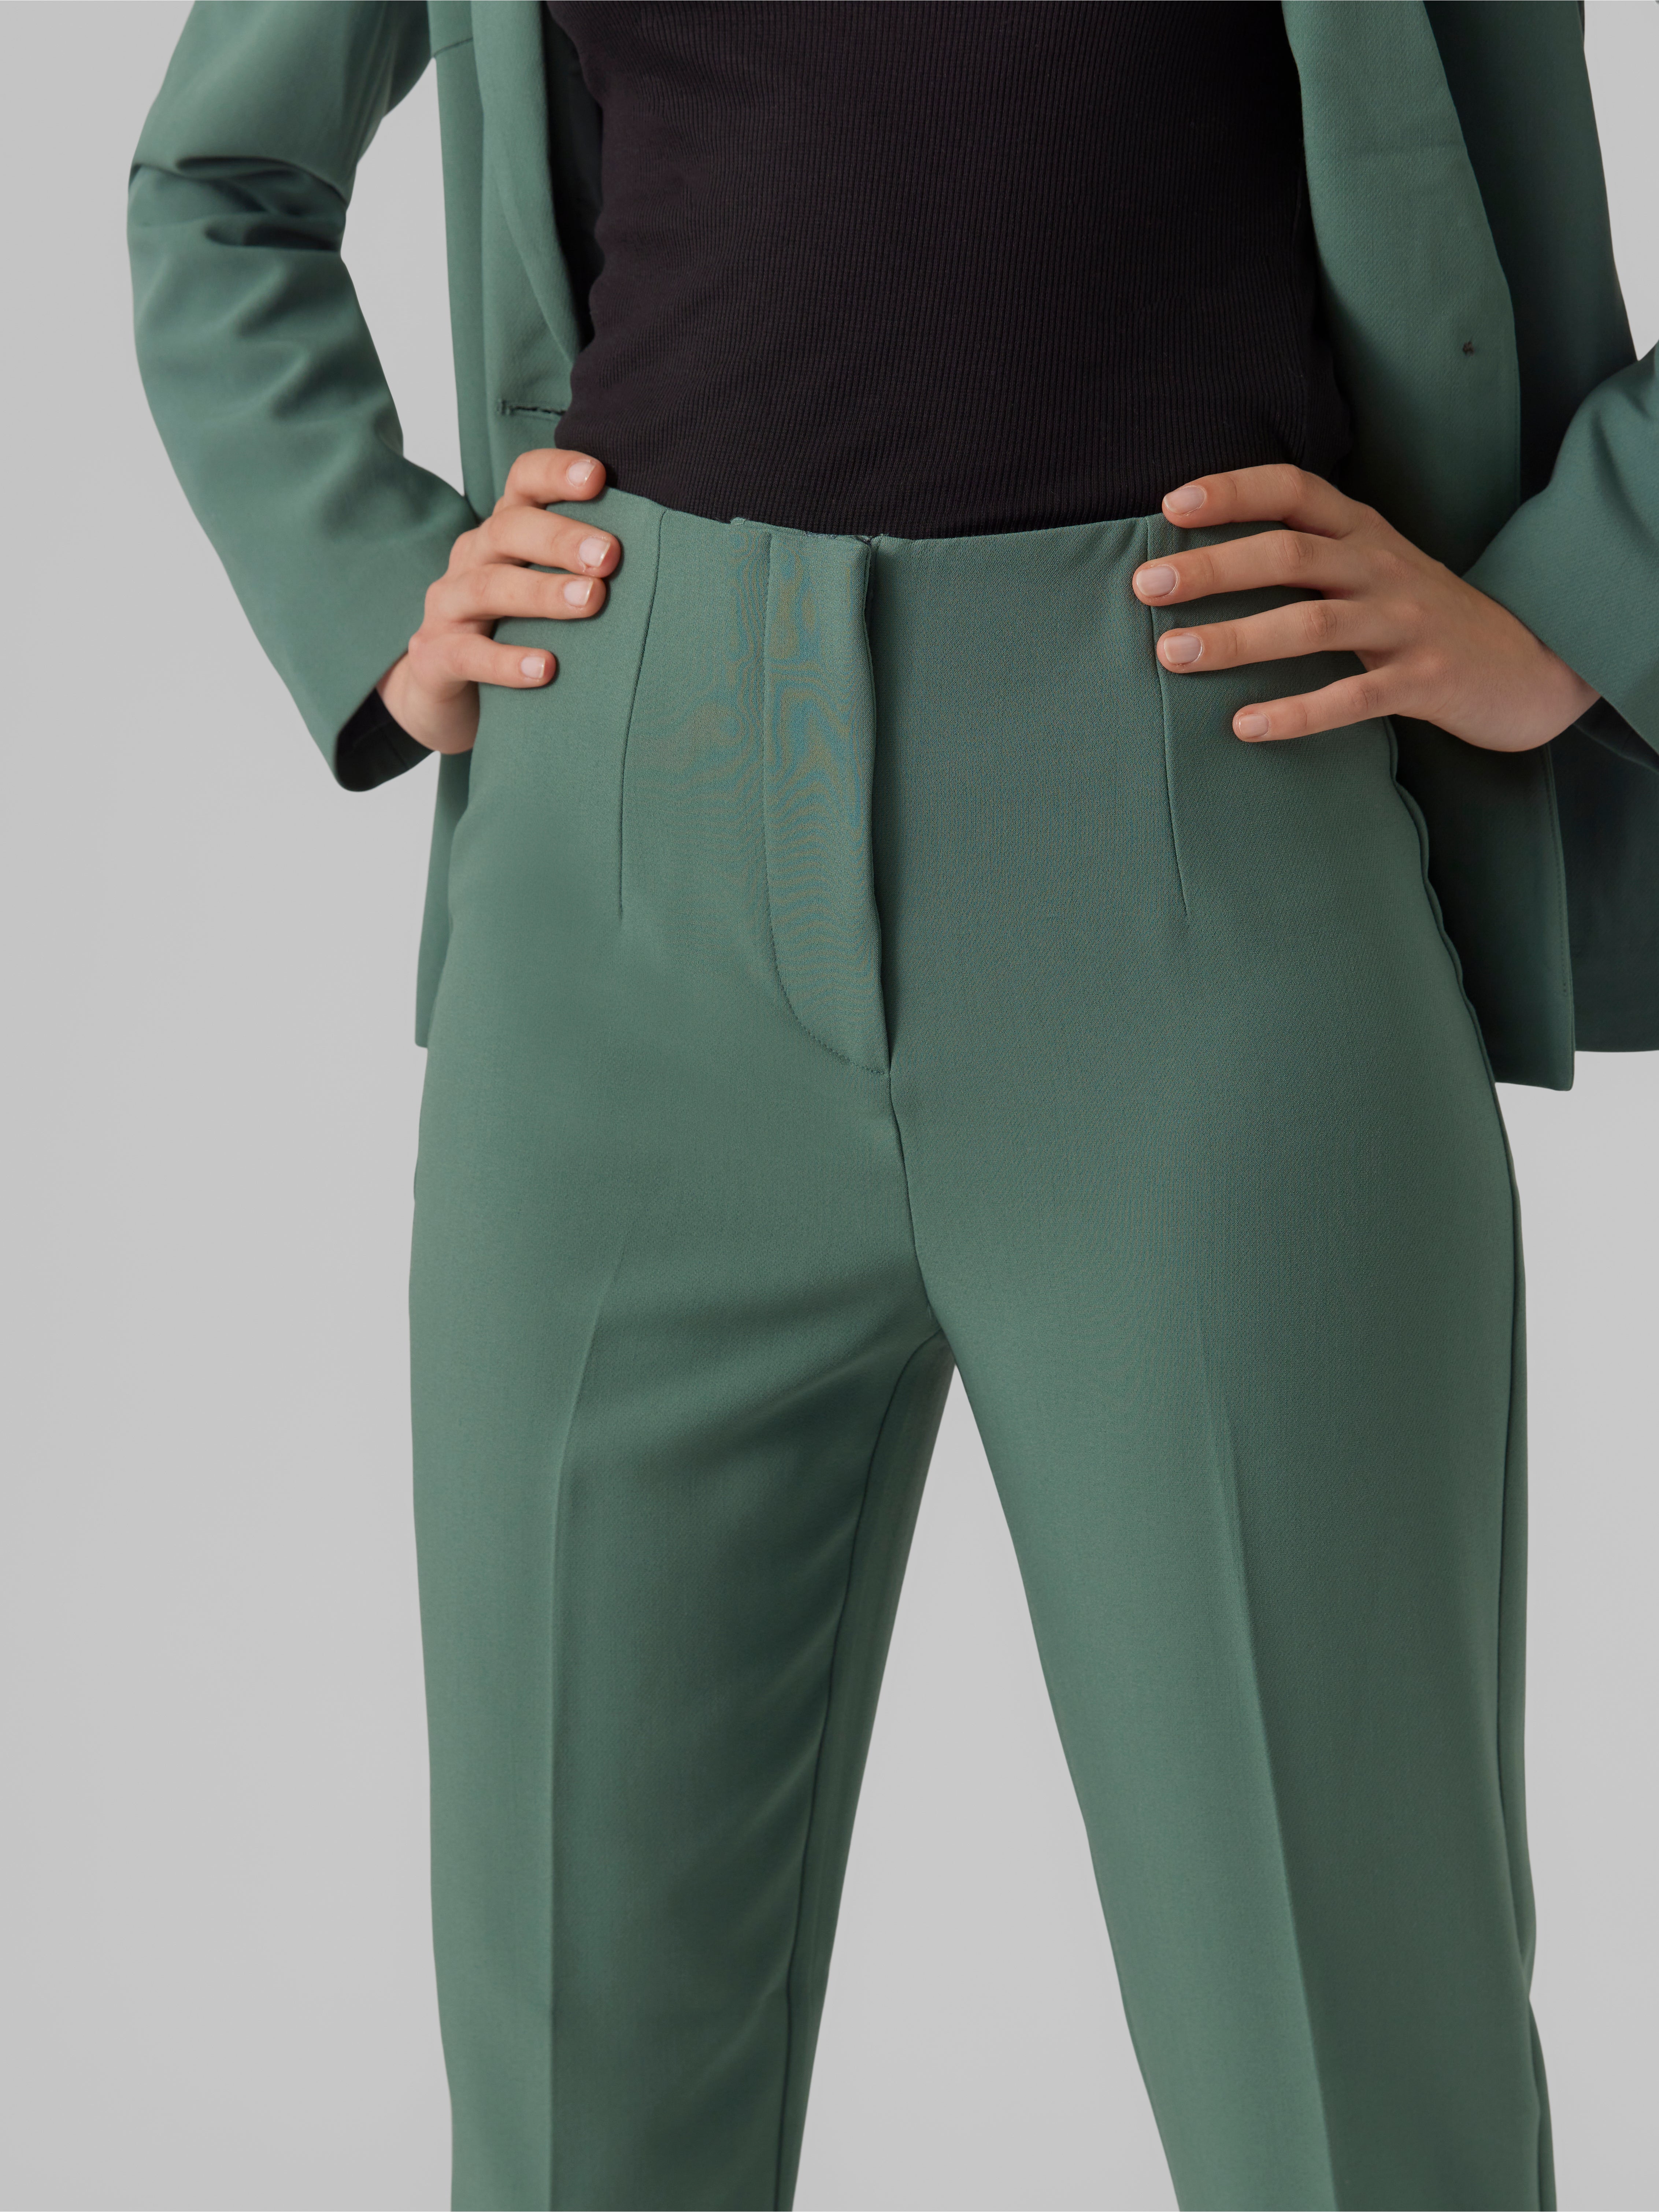 Buy Women Green Solid Formal Regular Fit Trousers Online  694161  Van  Heusen